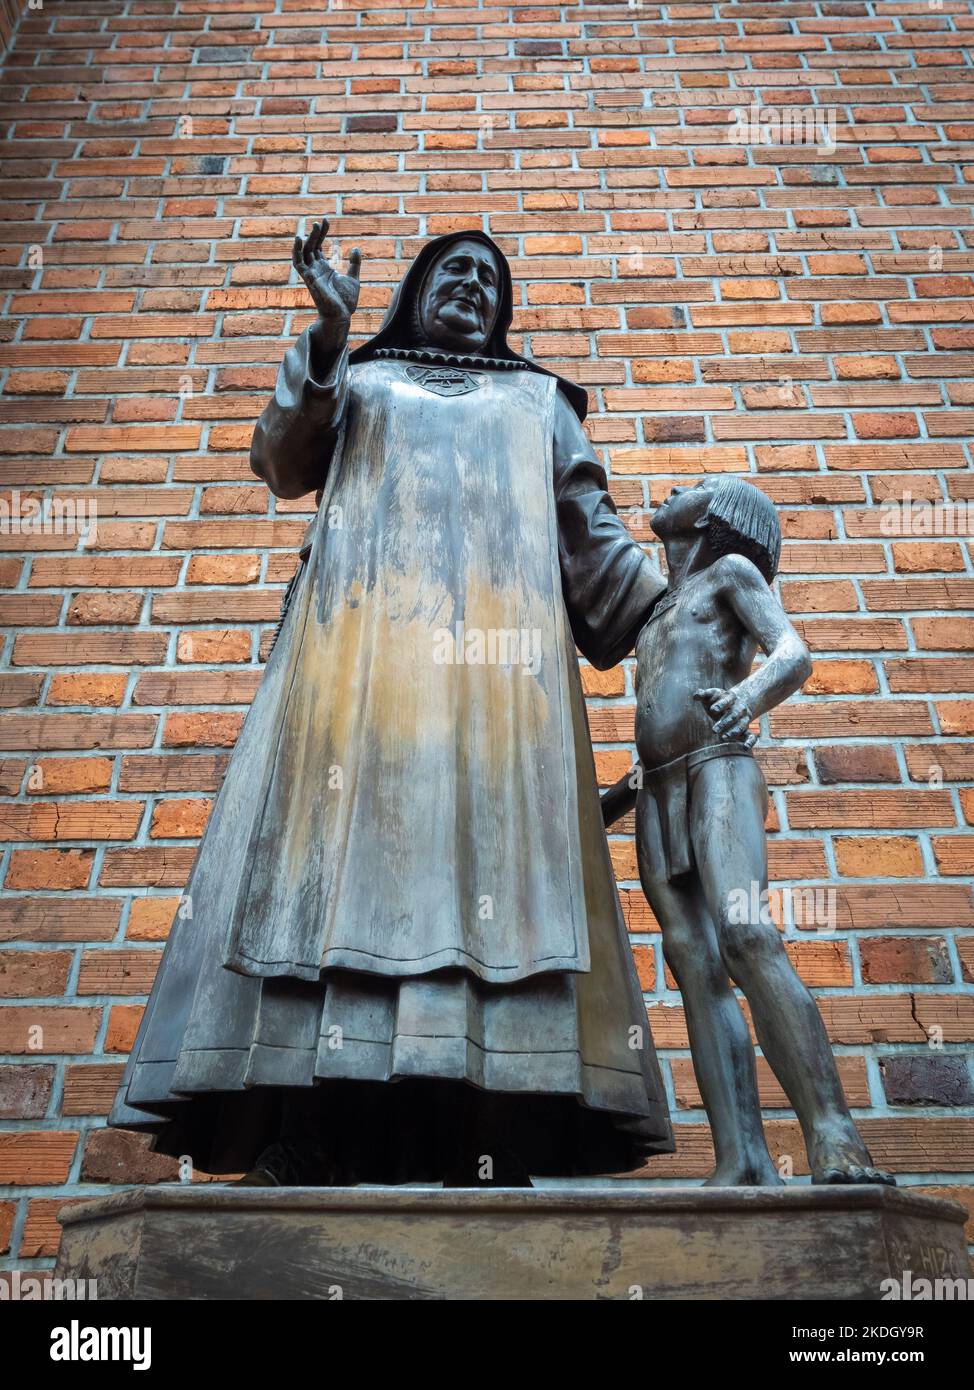 Jerico, Antioquia Kolumbien - April 5 2022: Bronzestatue der heiligen Laura Montoya Upegui bei der Kathedrale von Jerico mit historischem Text unten Stockfoto